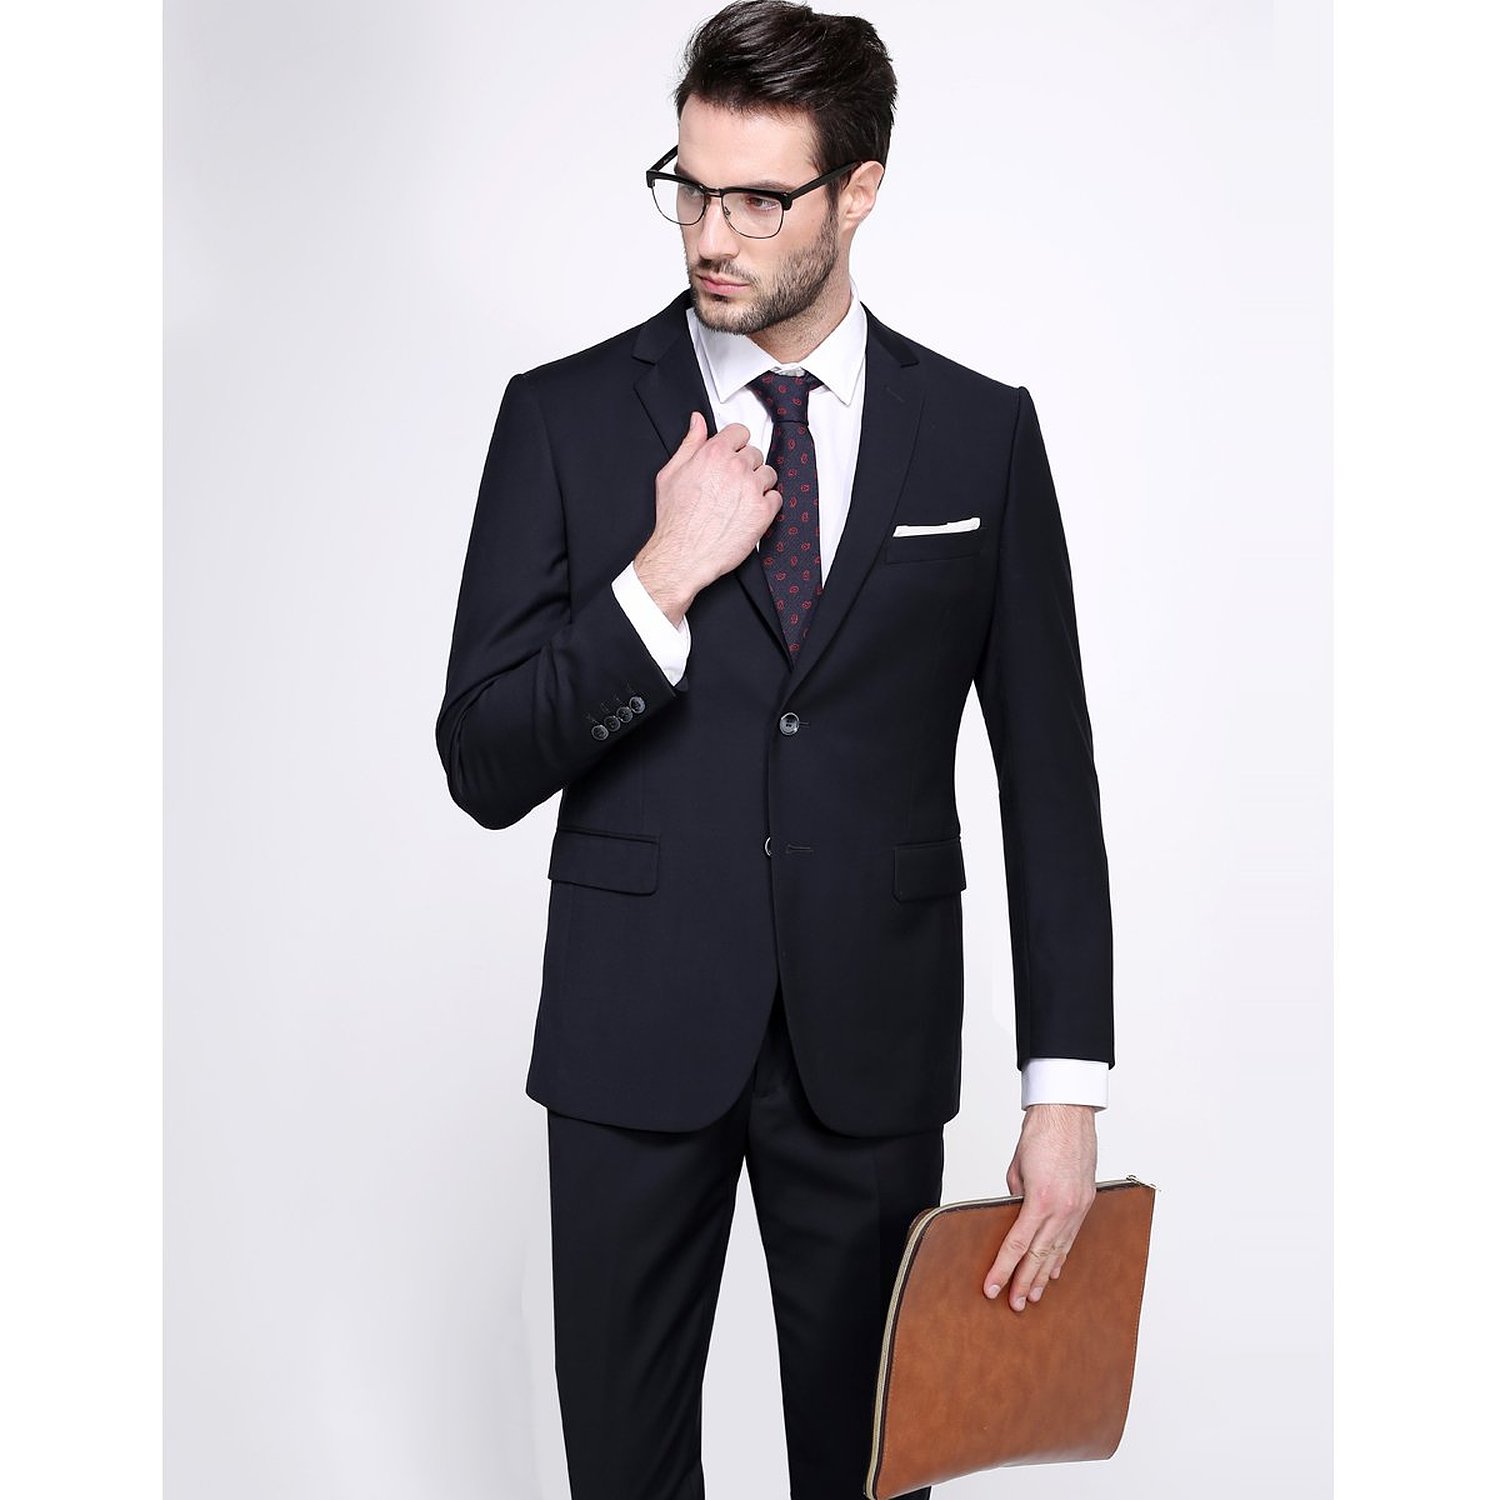 Men's suits, dark blue business suit, View Men Suit, Conquerant or ...